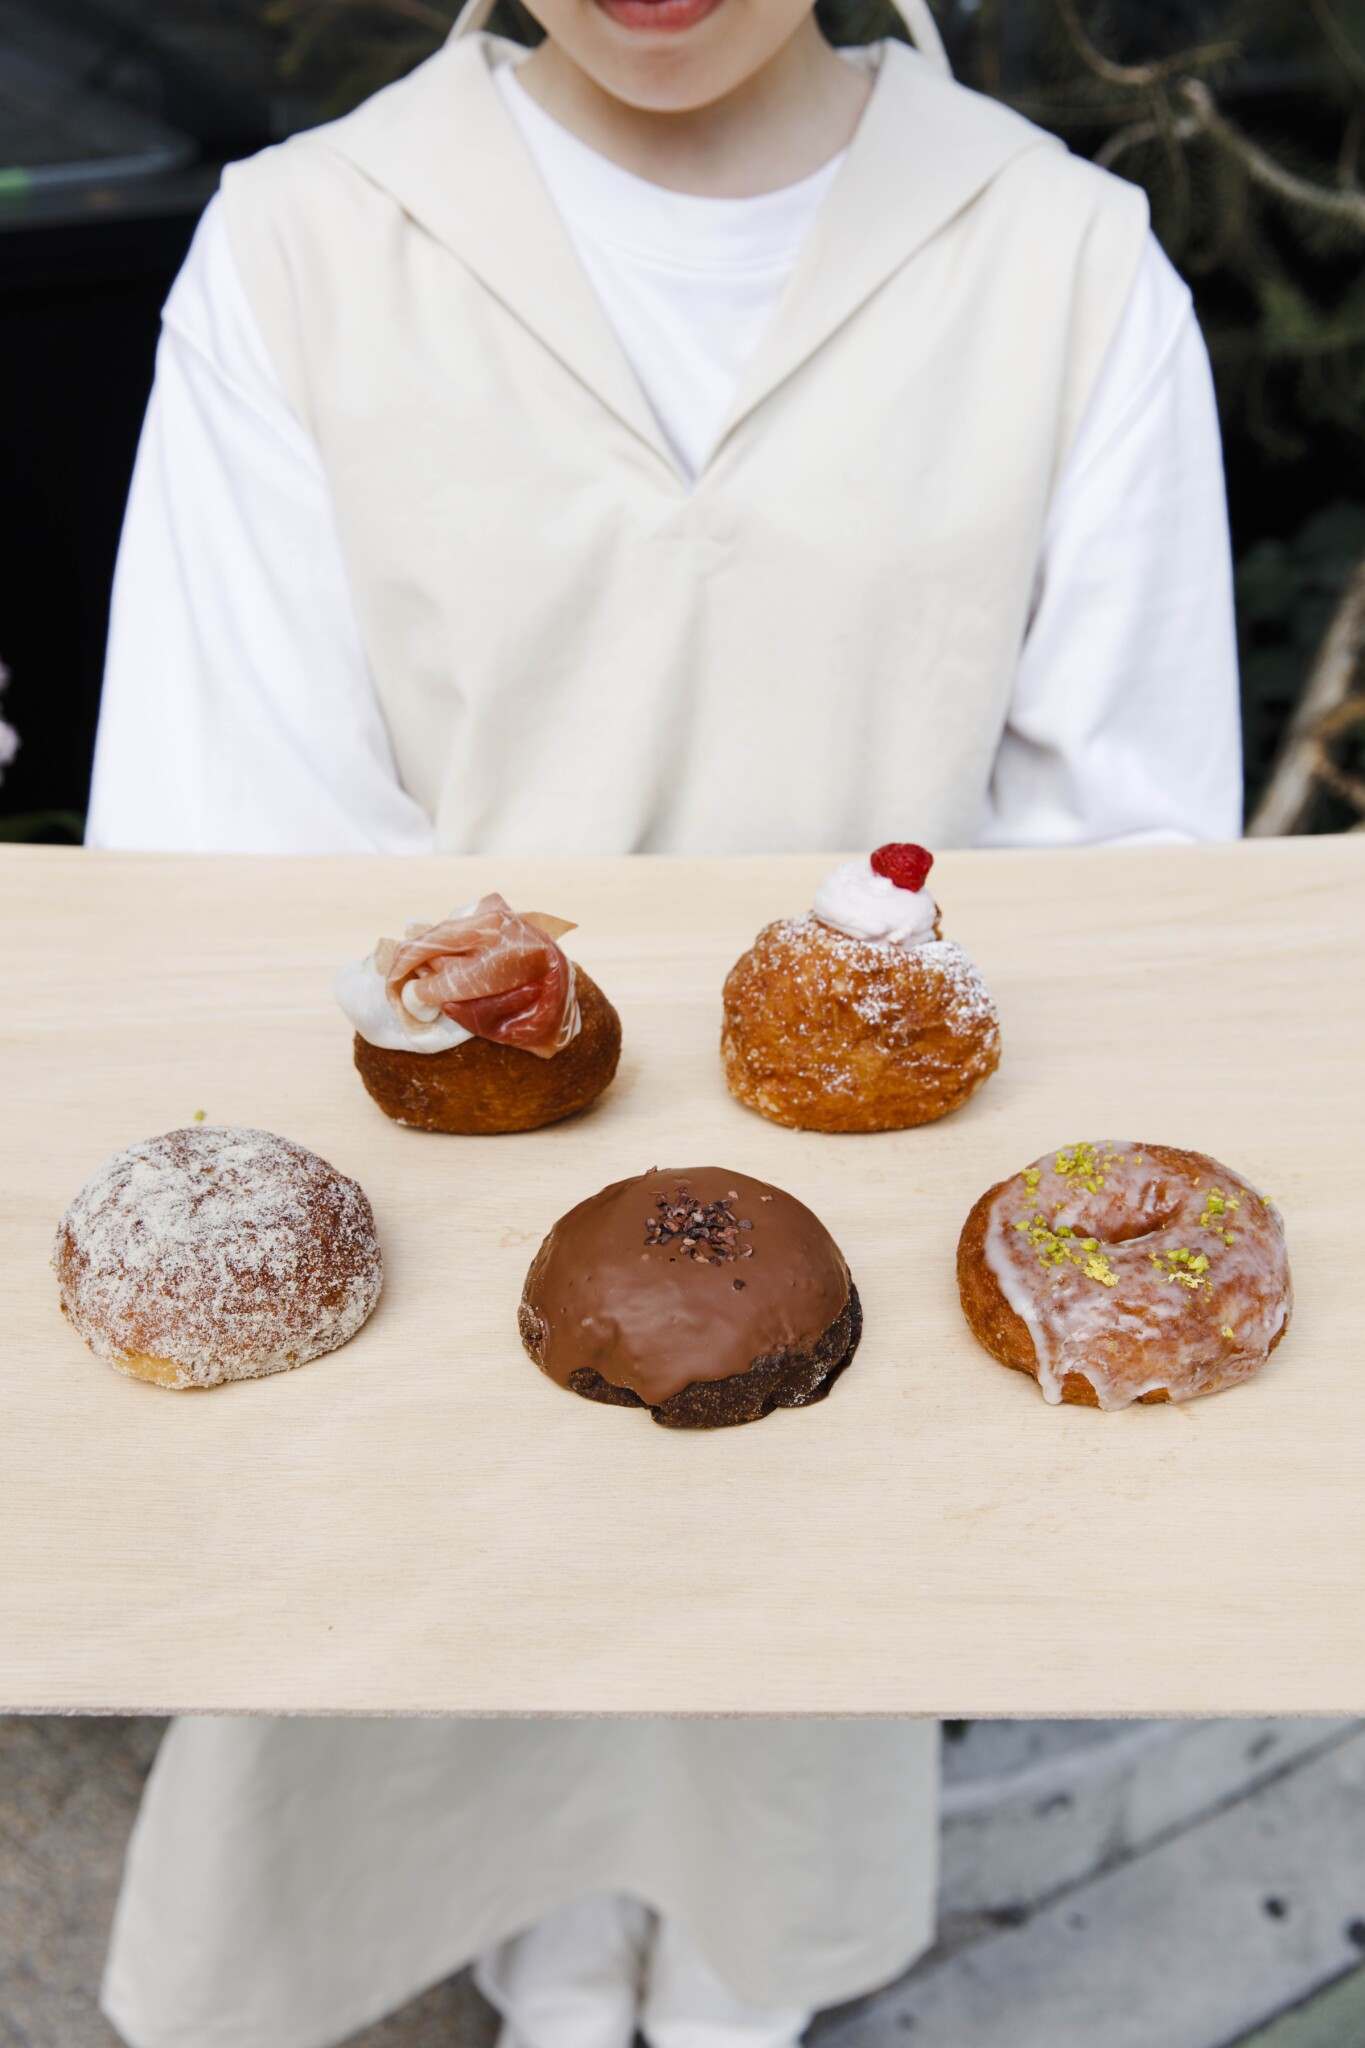 次の話題はドーナツだ。中目黒〈I'm donut?〉&目黒〈bagel standard